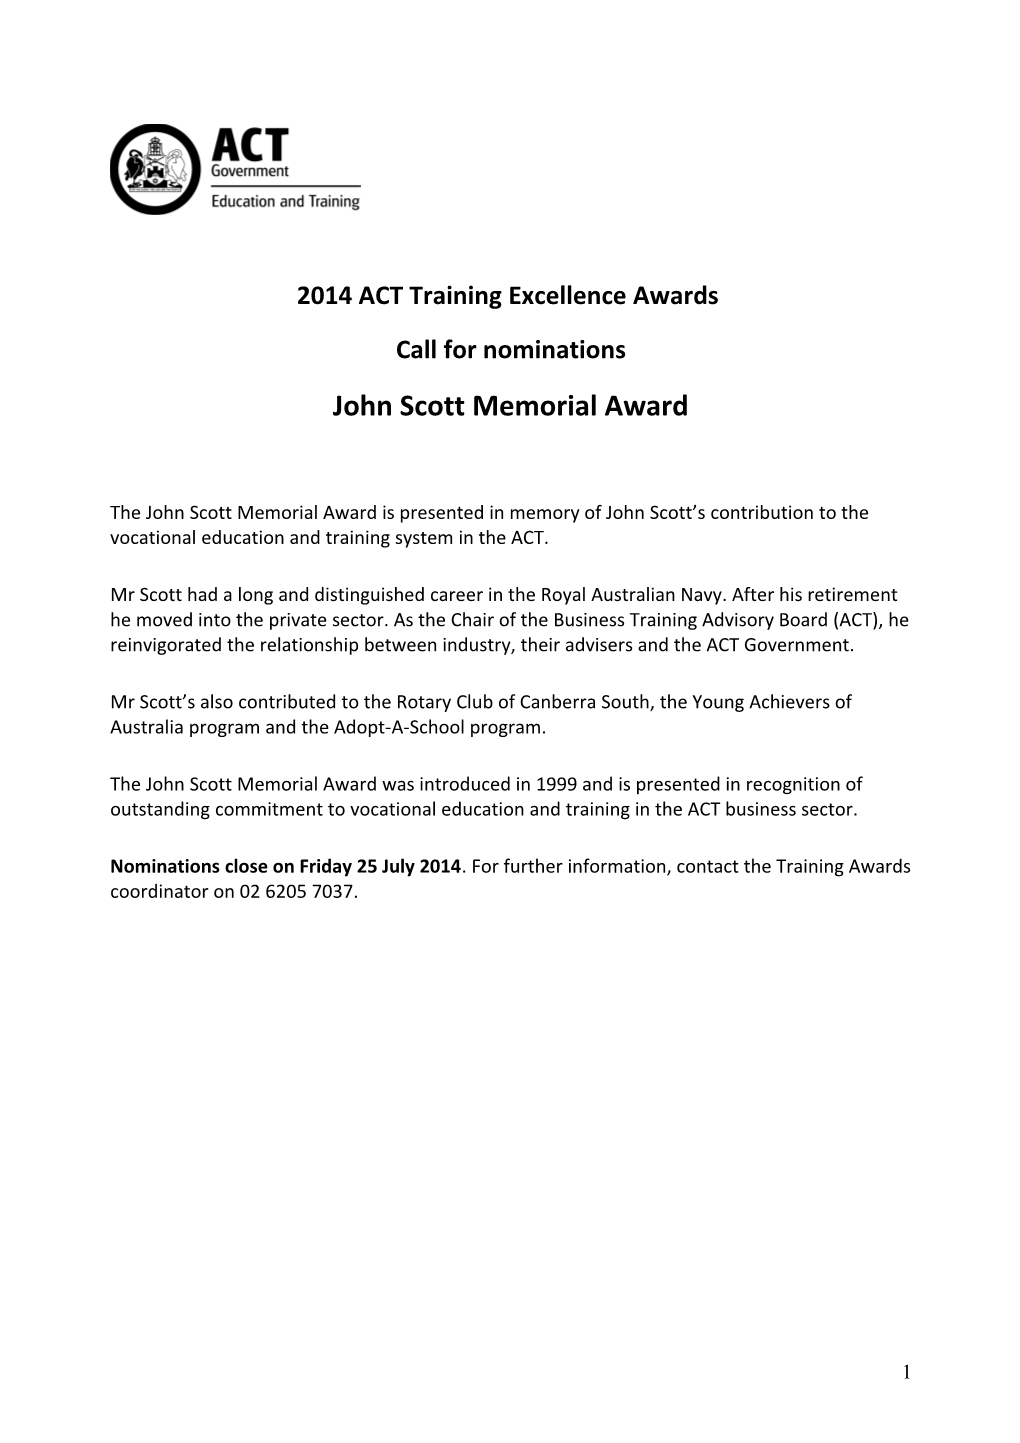 Nomination Form - John Scott Memorial Award